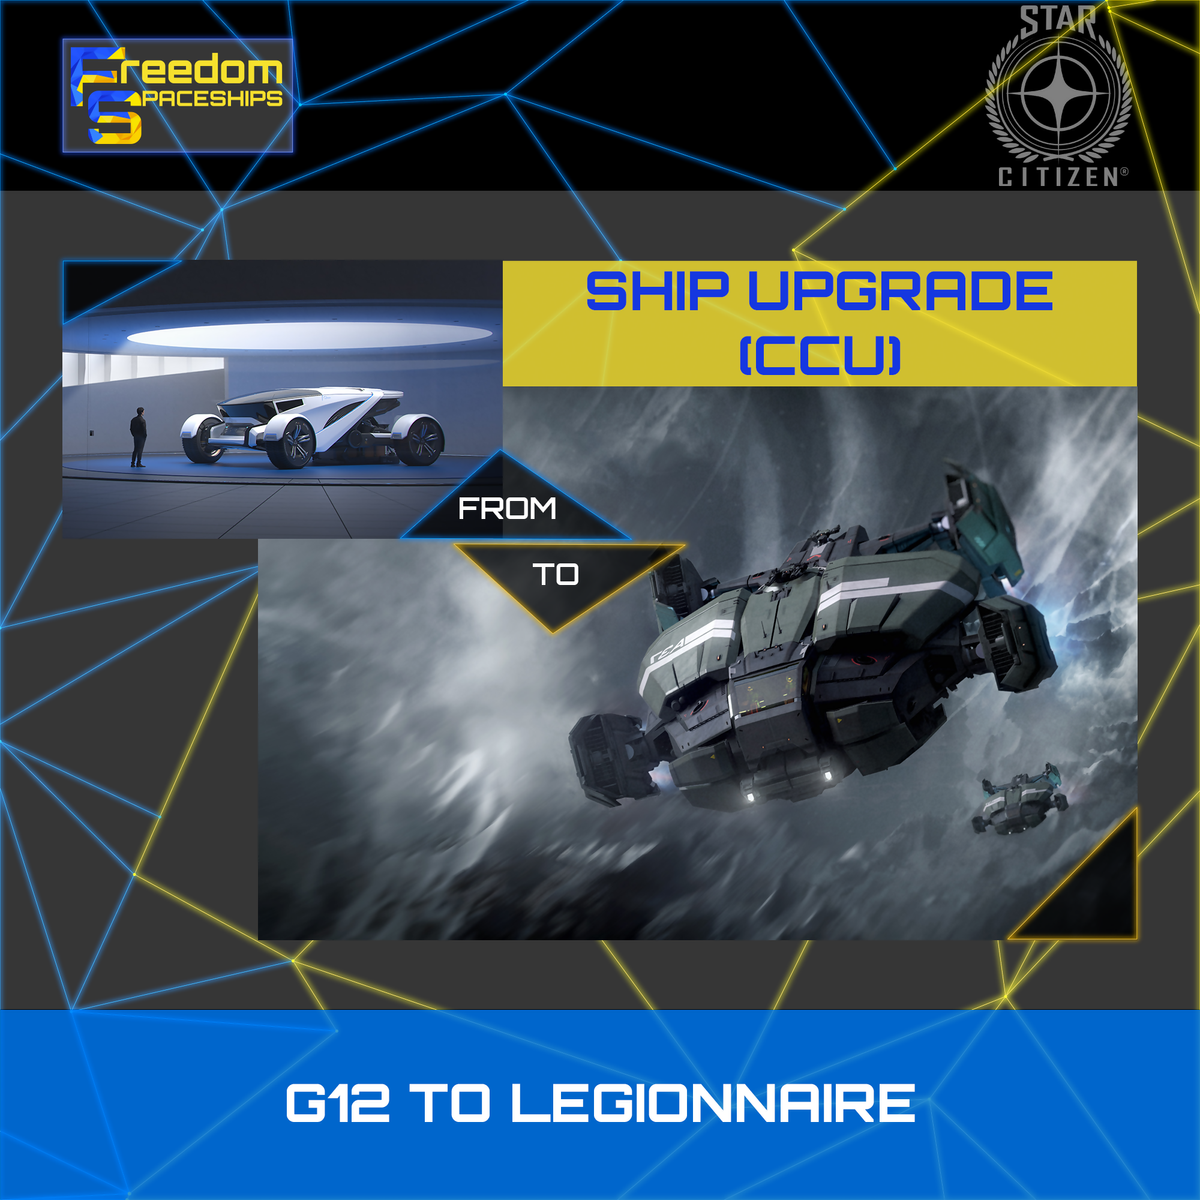 Upgrade - G12 to Legionnaire